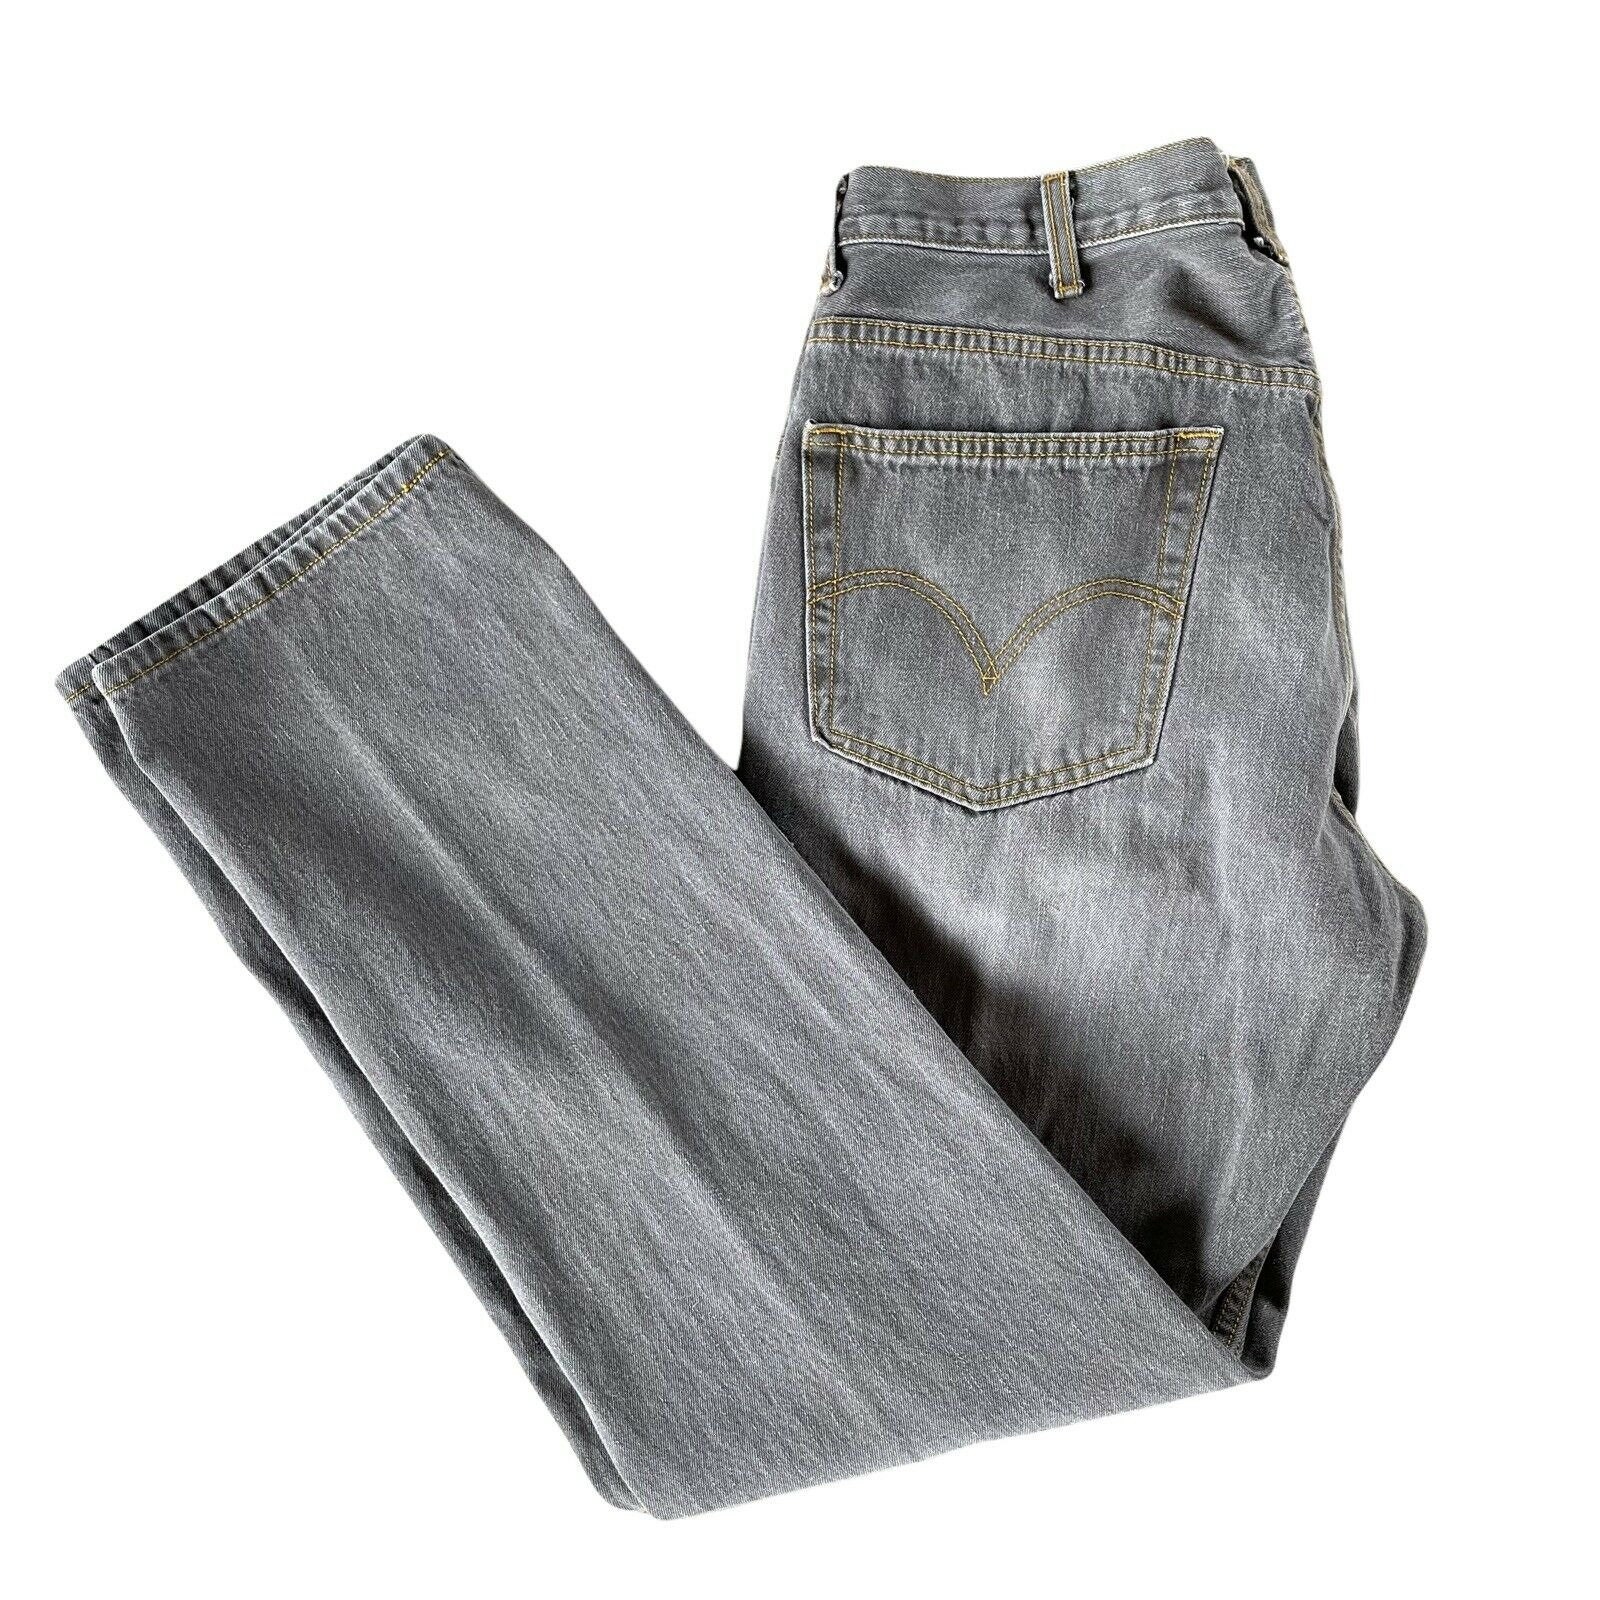 Anoi I tide udkast Levis 505 Regular Fit Jeans Mens Gray Denim 38 X 34 - Etsy